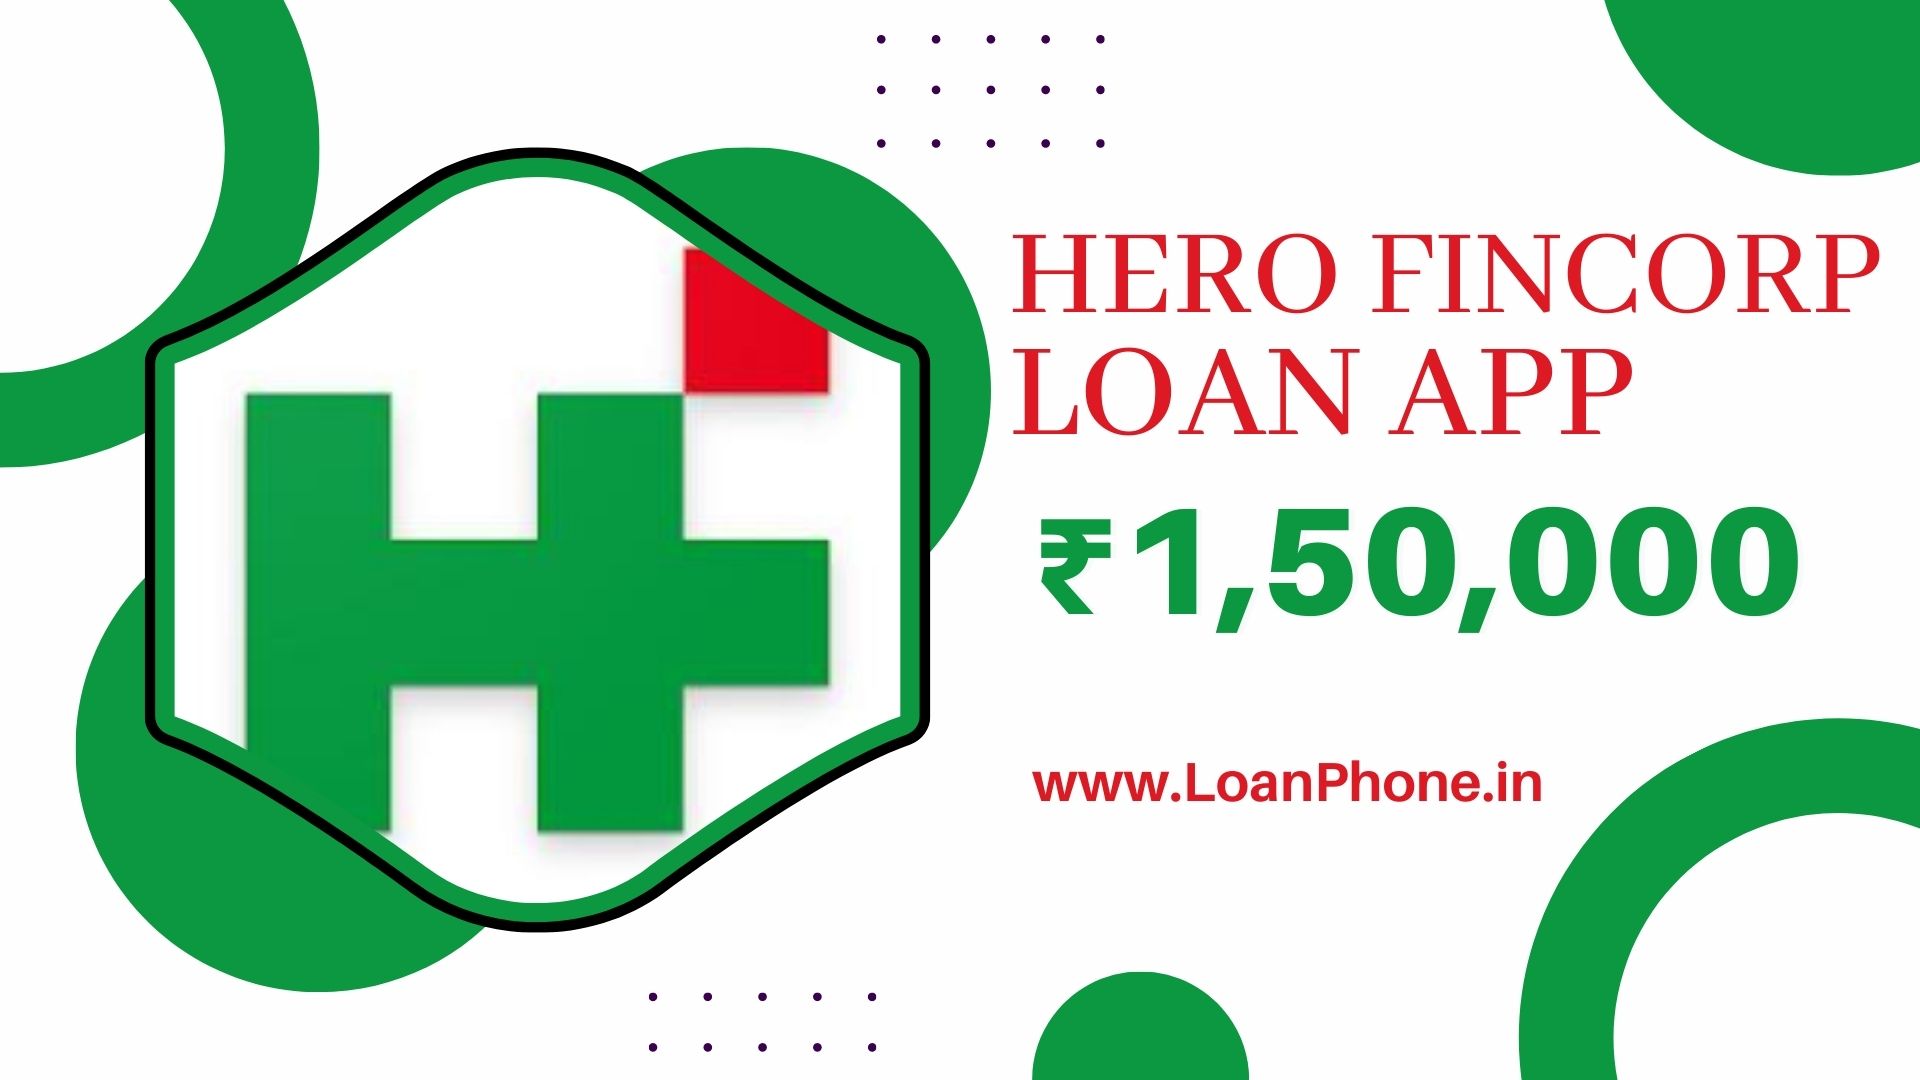 Hero Fincorp Loan App से कितने तक का लोन मिल सकता है?